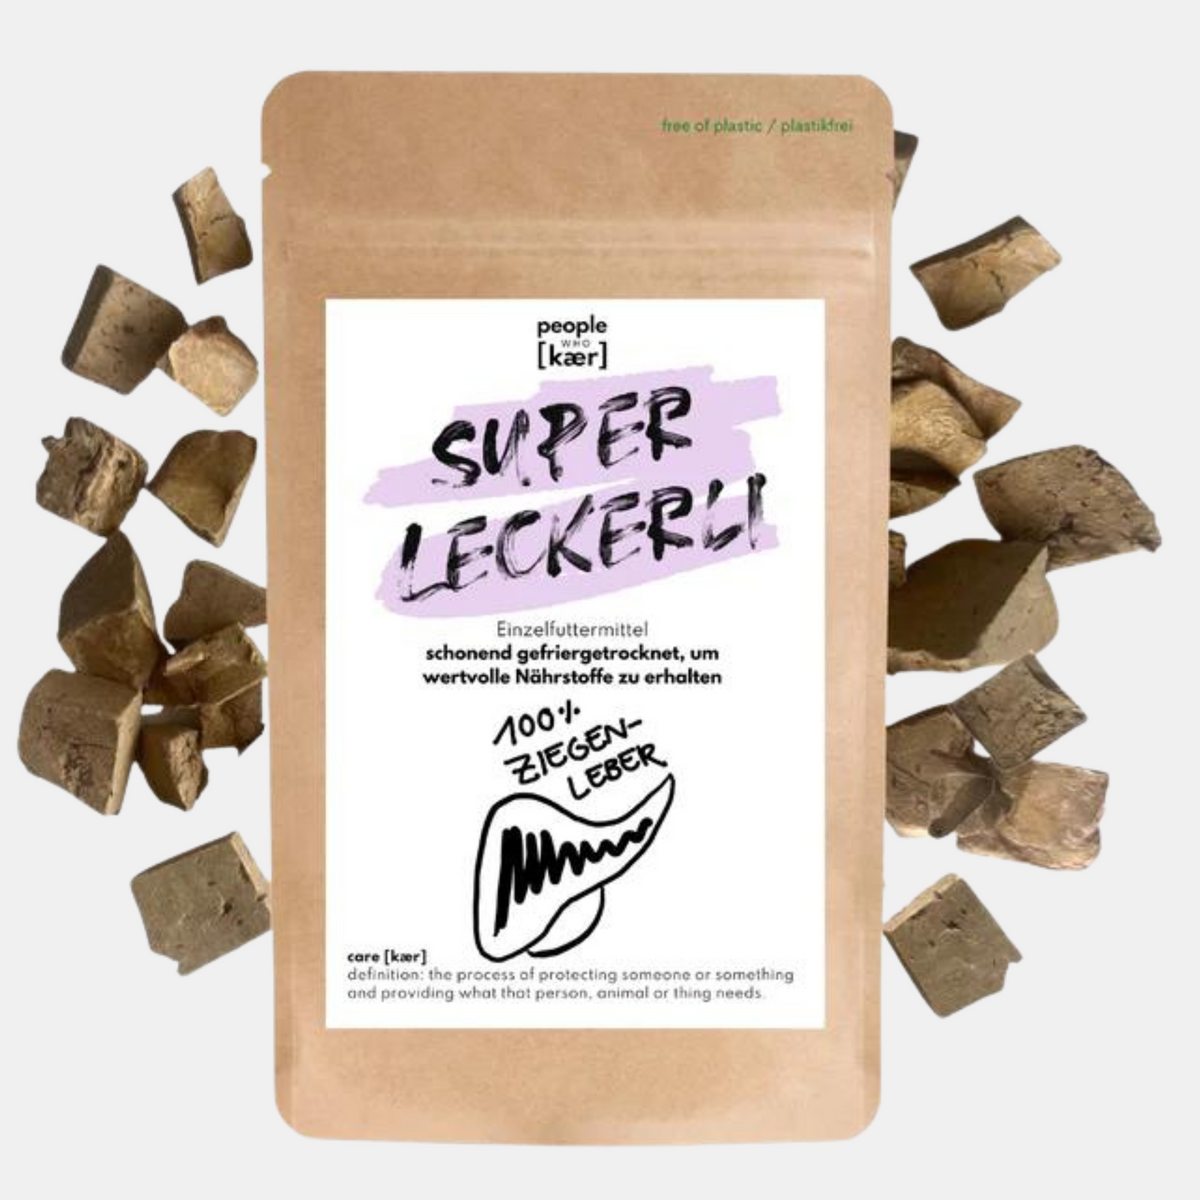 Super Leckerli aus 100% gefriergetrockneter Ziegenleber (80g)